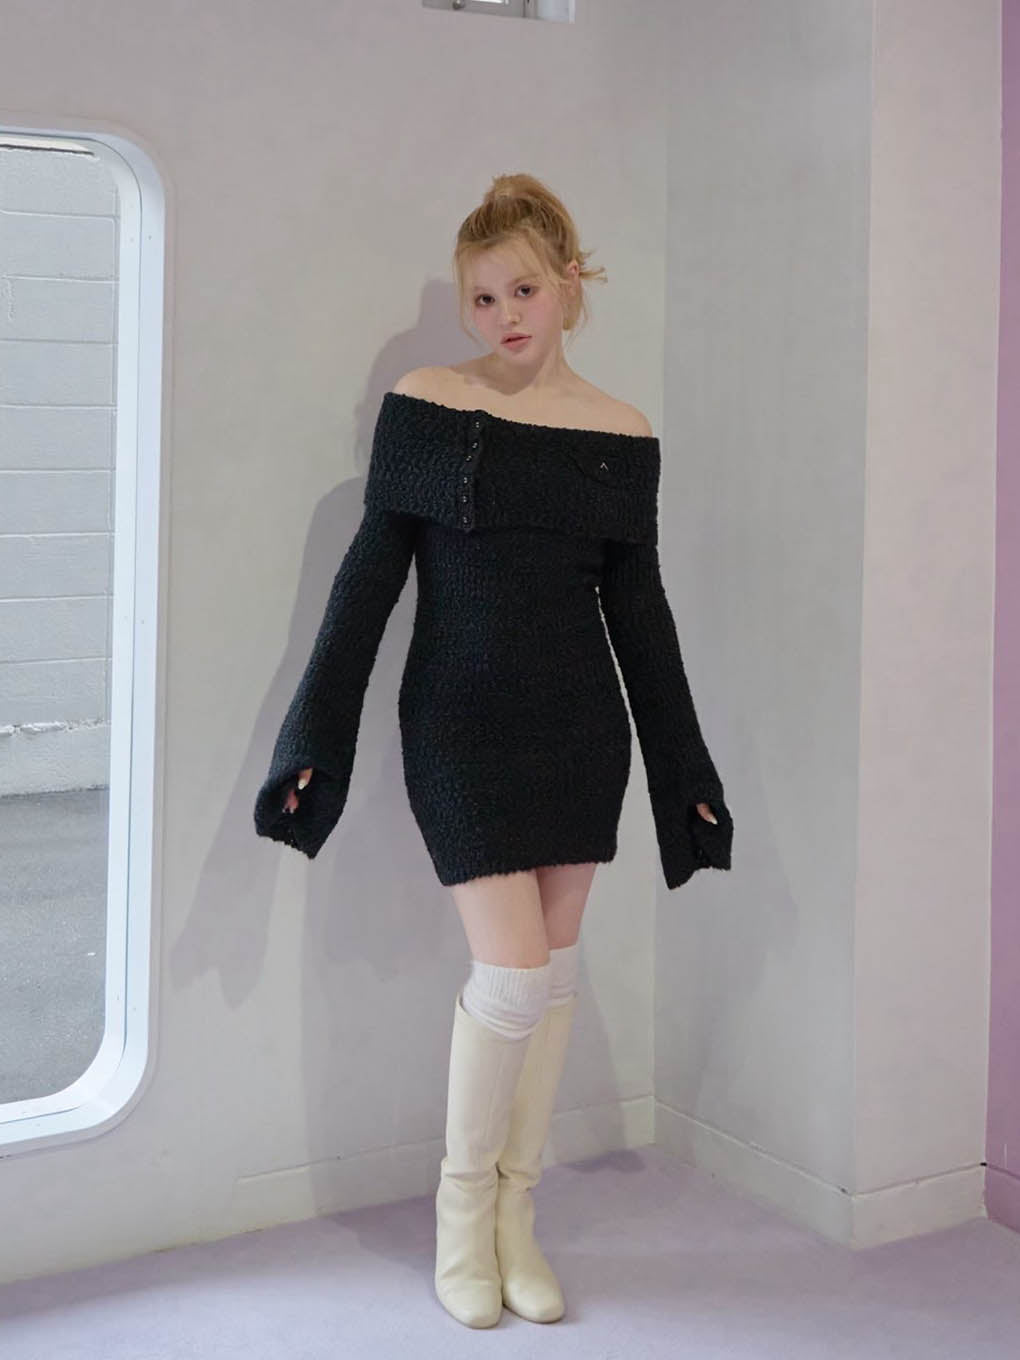 オンラインにて購入致しましたANDMARY Aurora knit mini dress